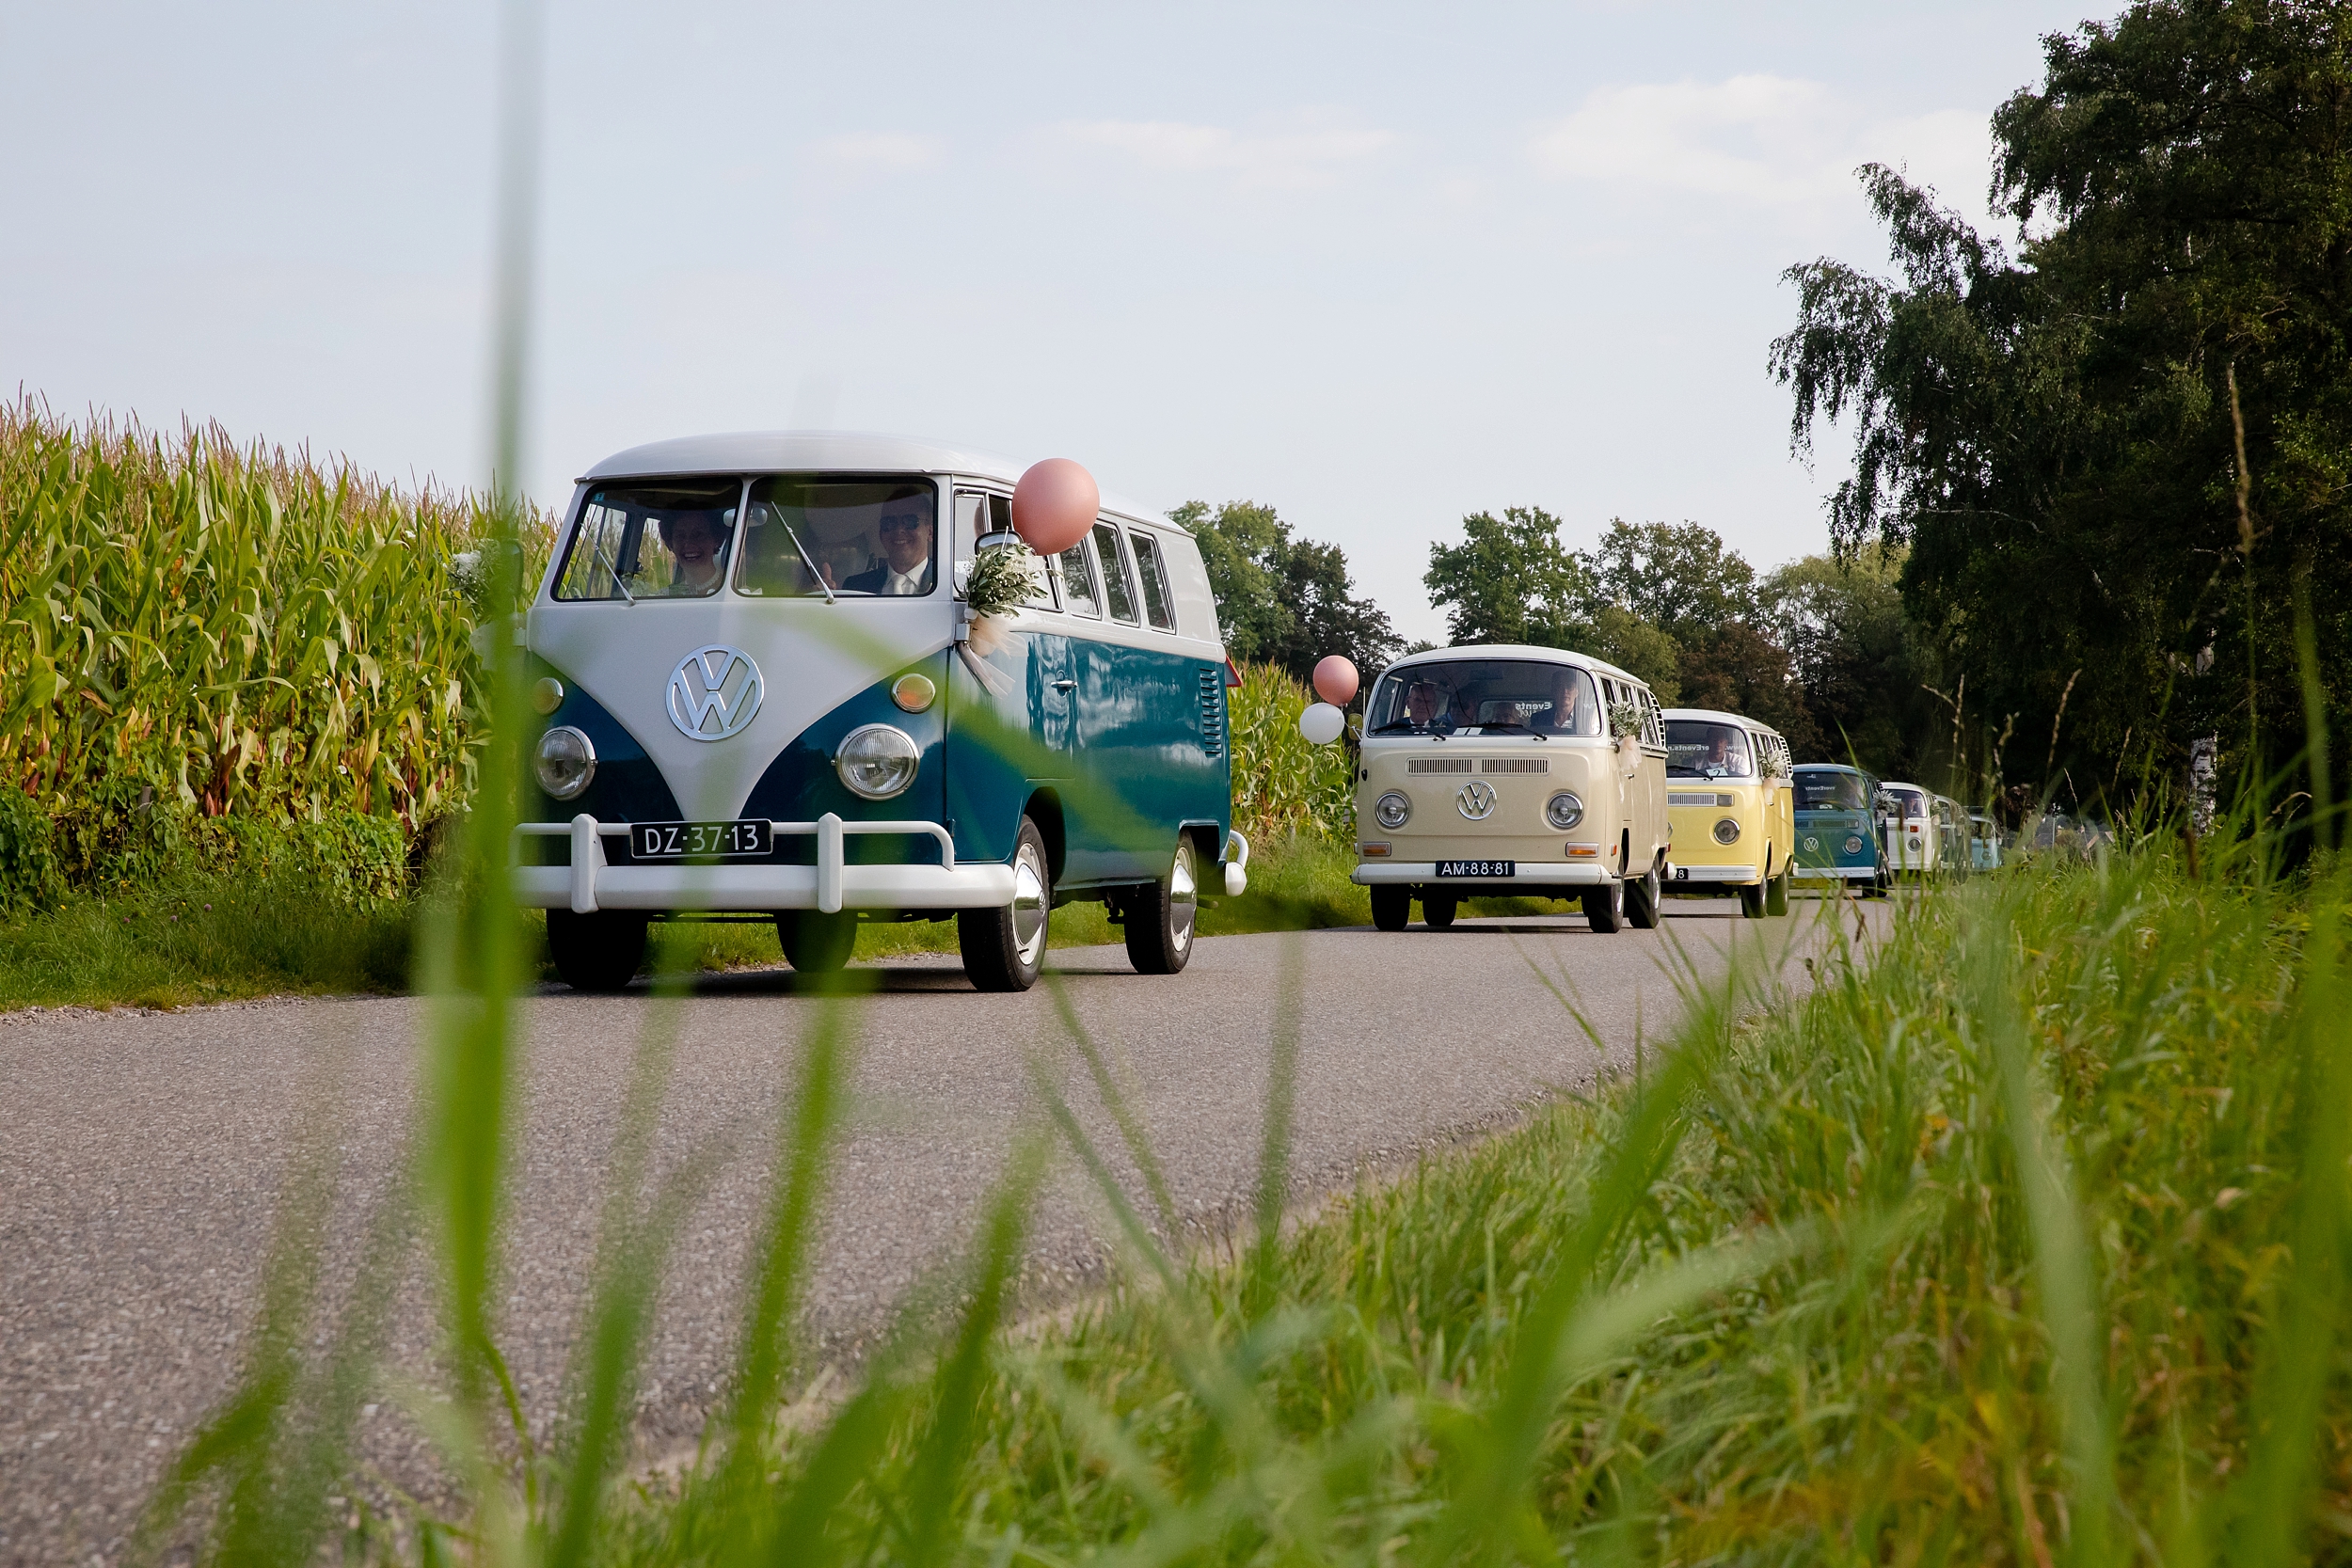 Vanuit Kootwijkerbroek rijden acht geweldige volkswagenbusjes naar Lunteren: een stoet waar je vrolijk van wordt! En dat merk je ook aan voorbijgangers: ze gaan vanzelf lachen als ze deze kleurrijke optocht zien!